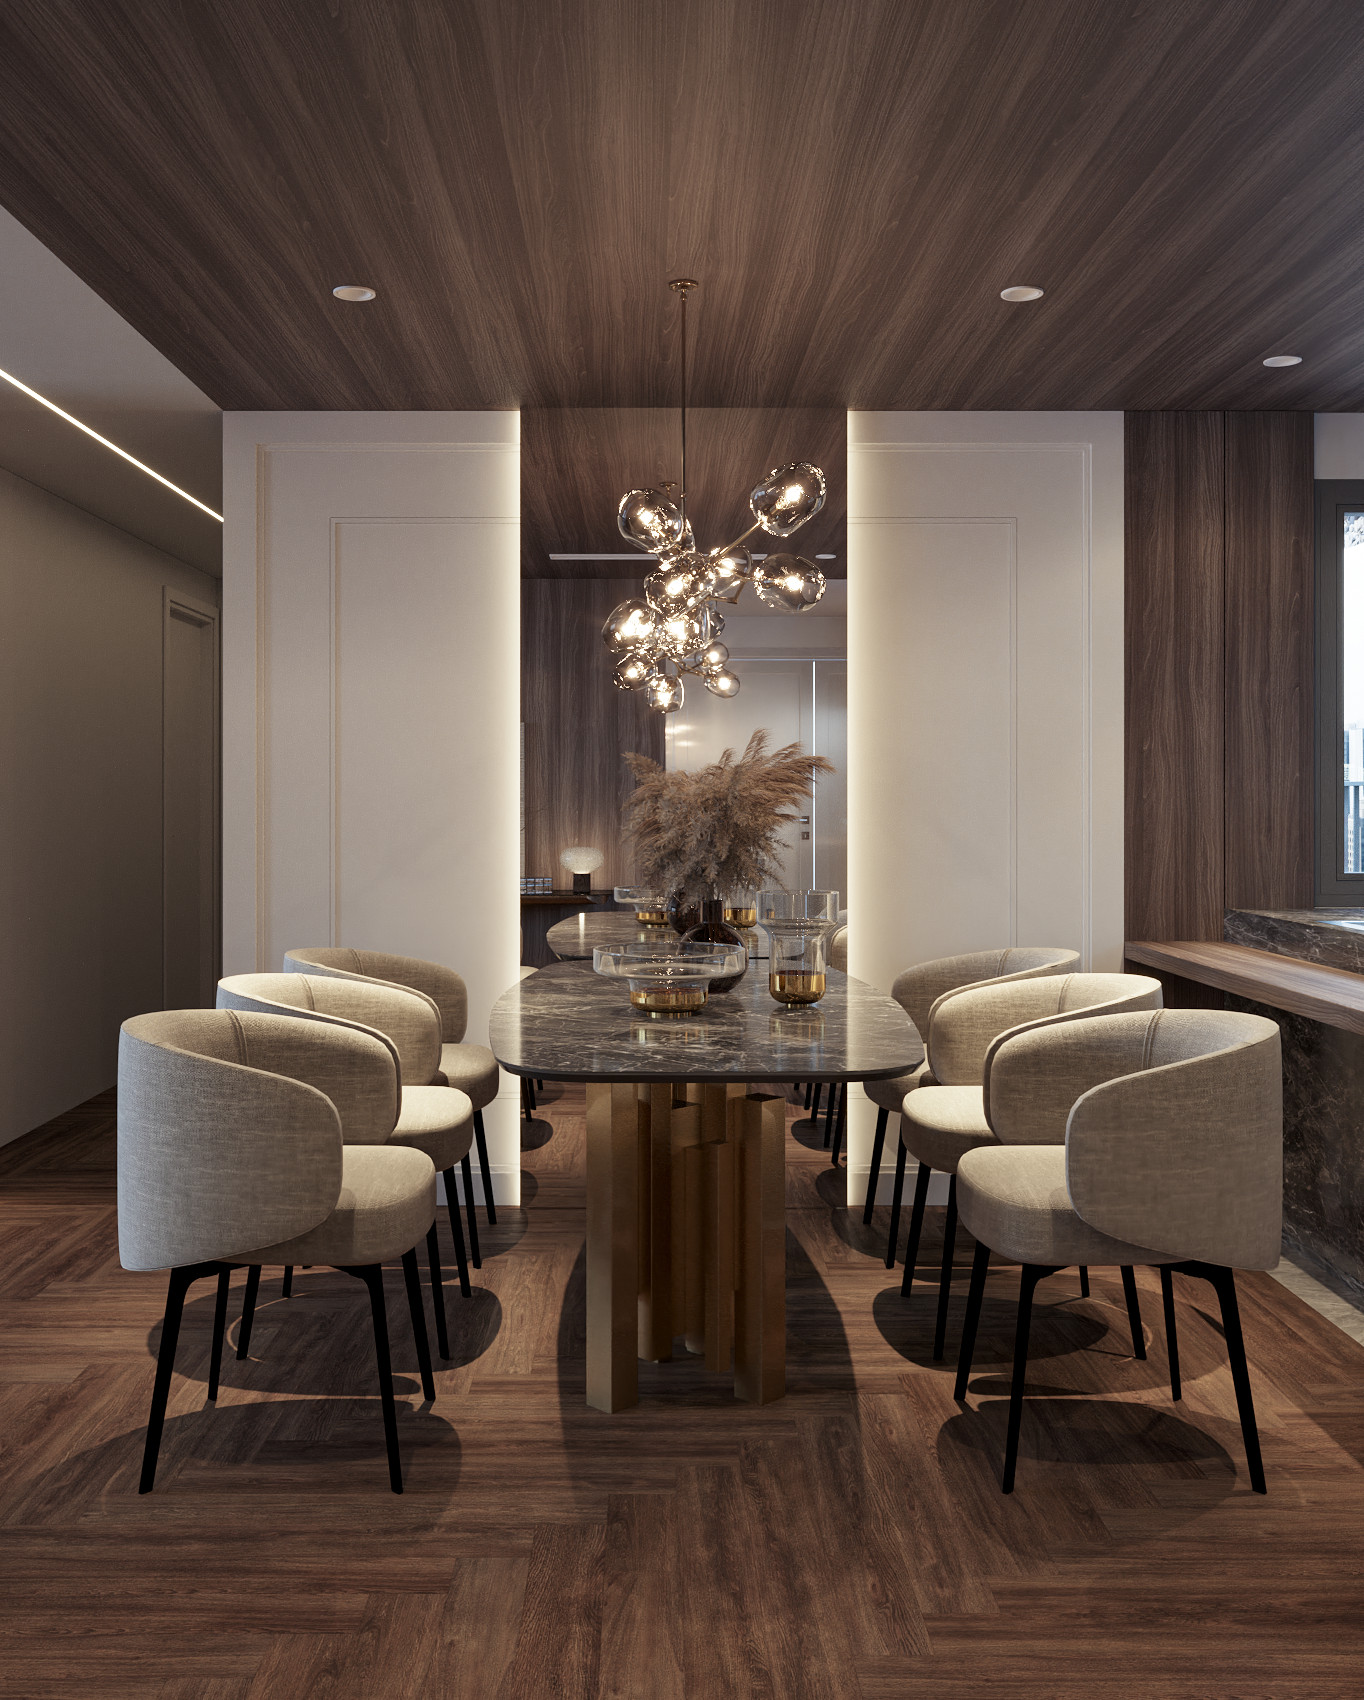 Phòng ăn, phong cách Hiện đại Modern, thiết kế concept nội thất, căn hộ Saigon Pearl Topaz 2